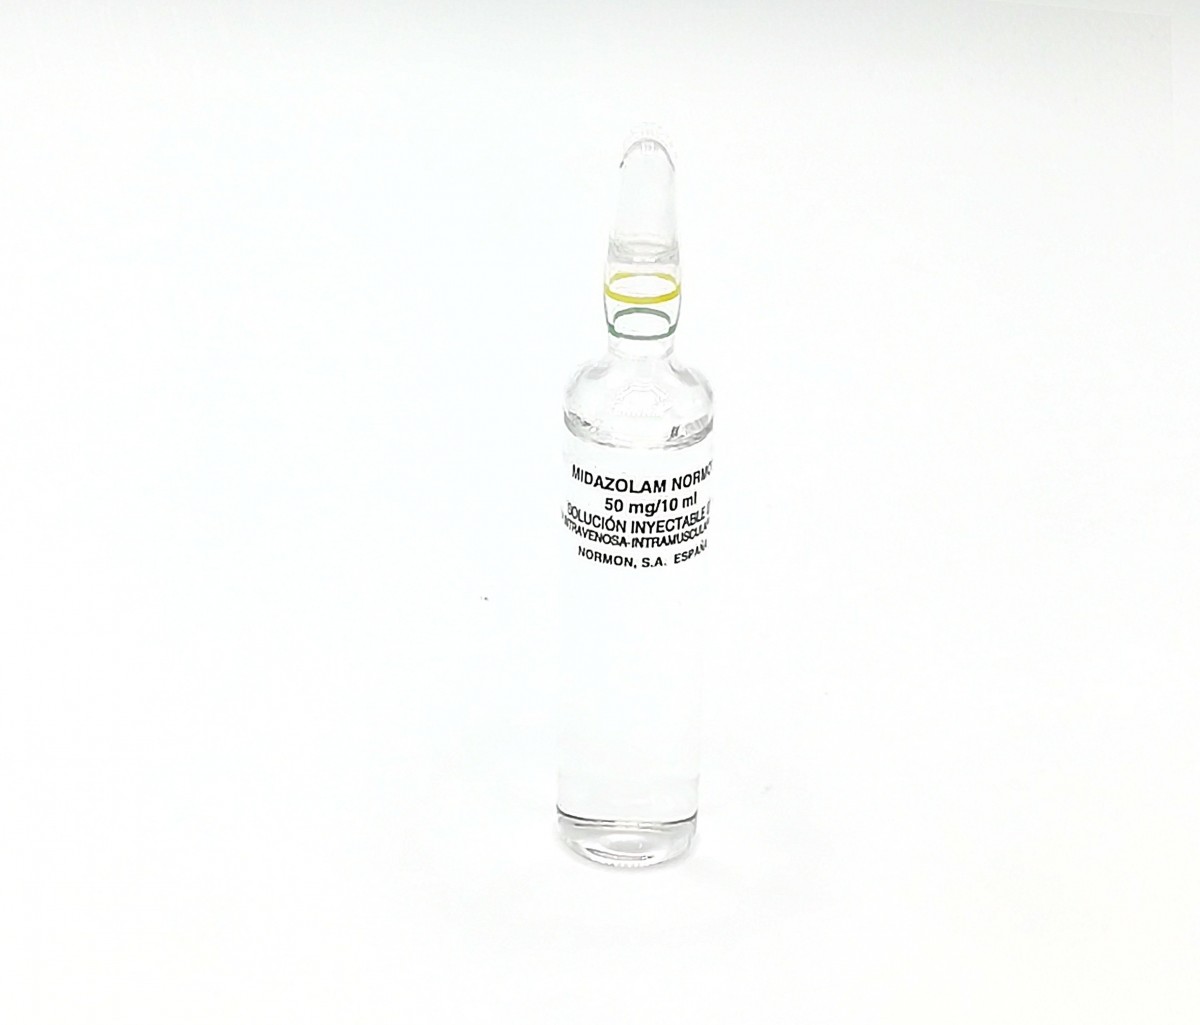 MIDAZOLAM NORMON 50 mg/10 ml SOLUCION INYECTABLE EFG, 50 ampollas de 10 ml fotografía de la forma farmacéutica.